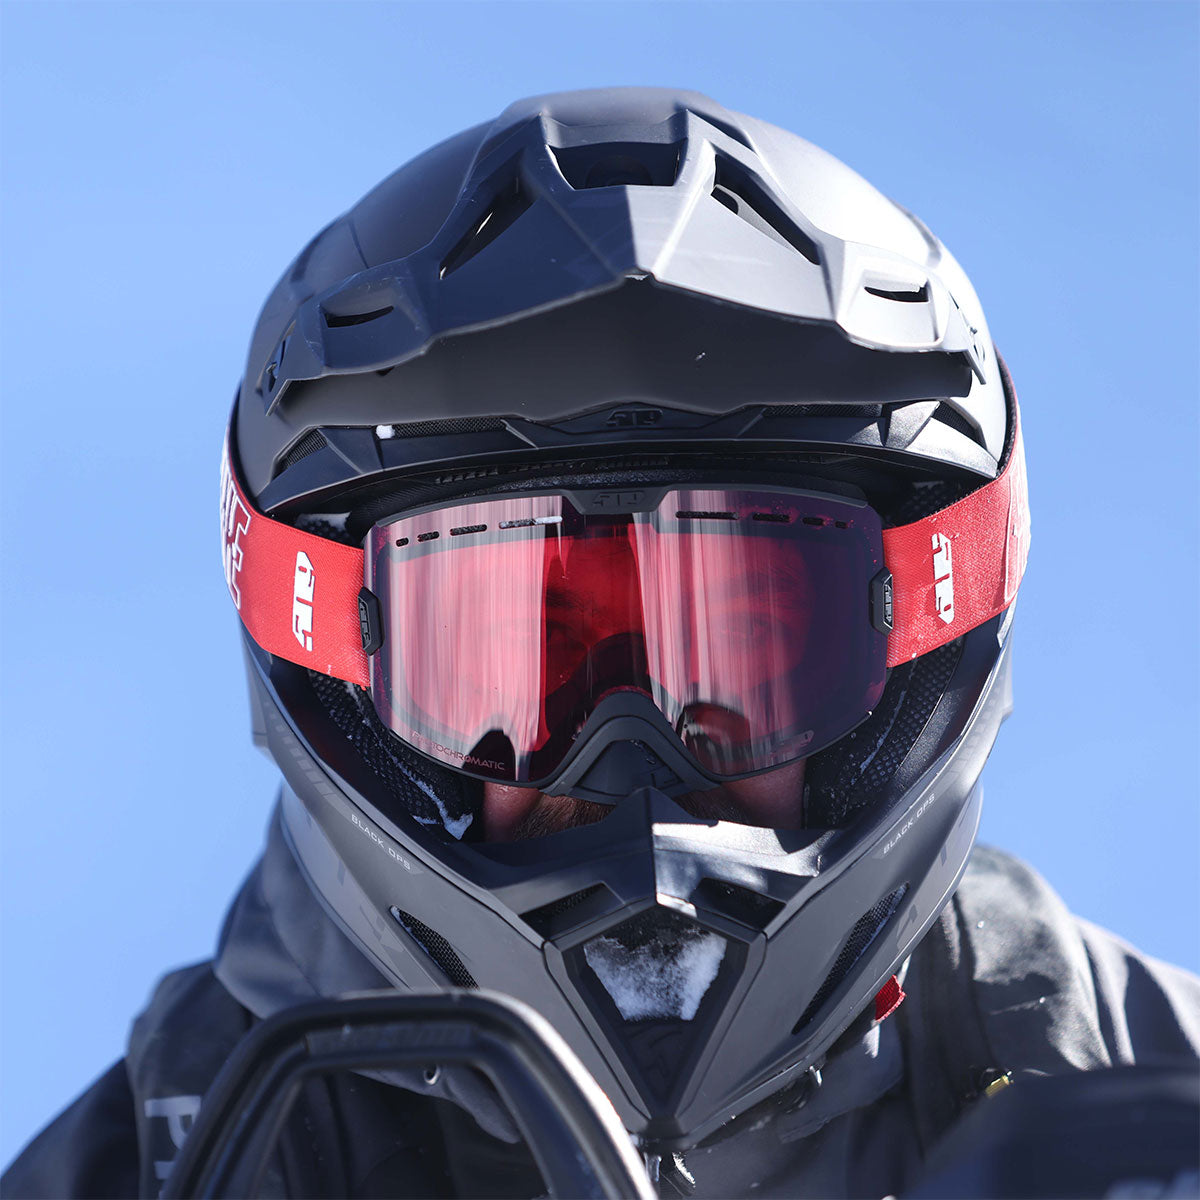 Altitude 2.0 Helmet